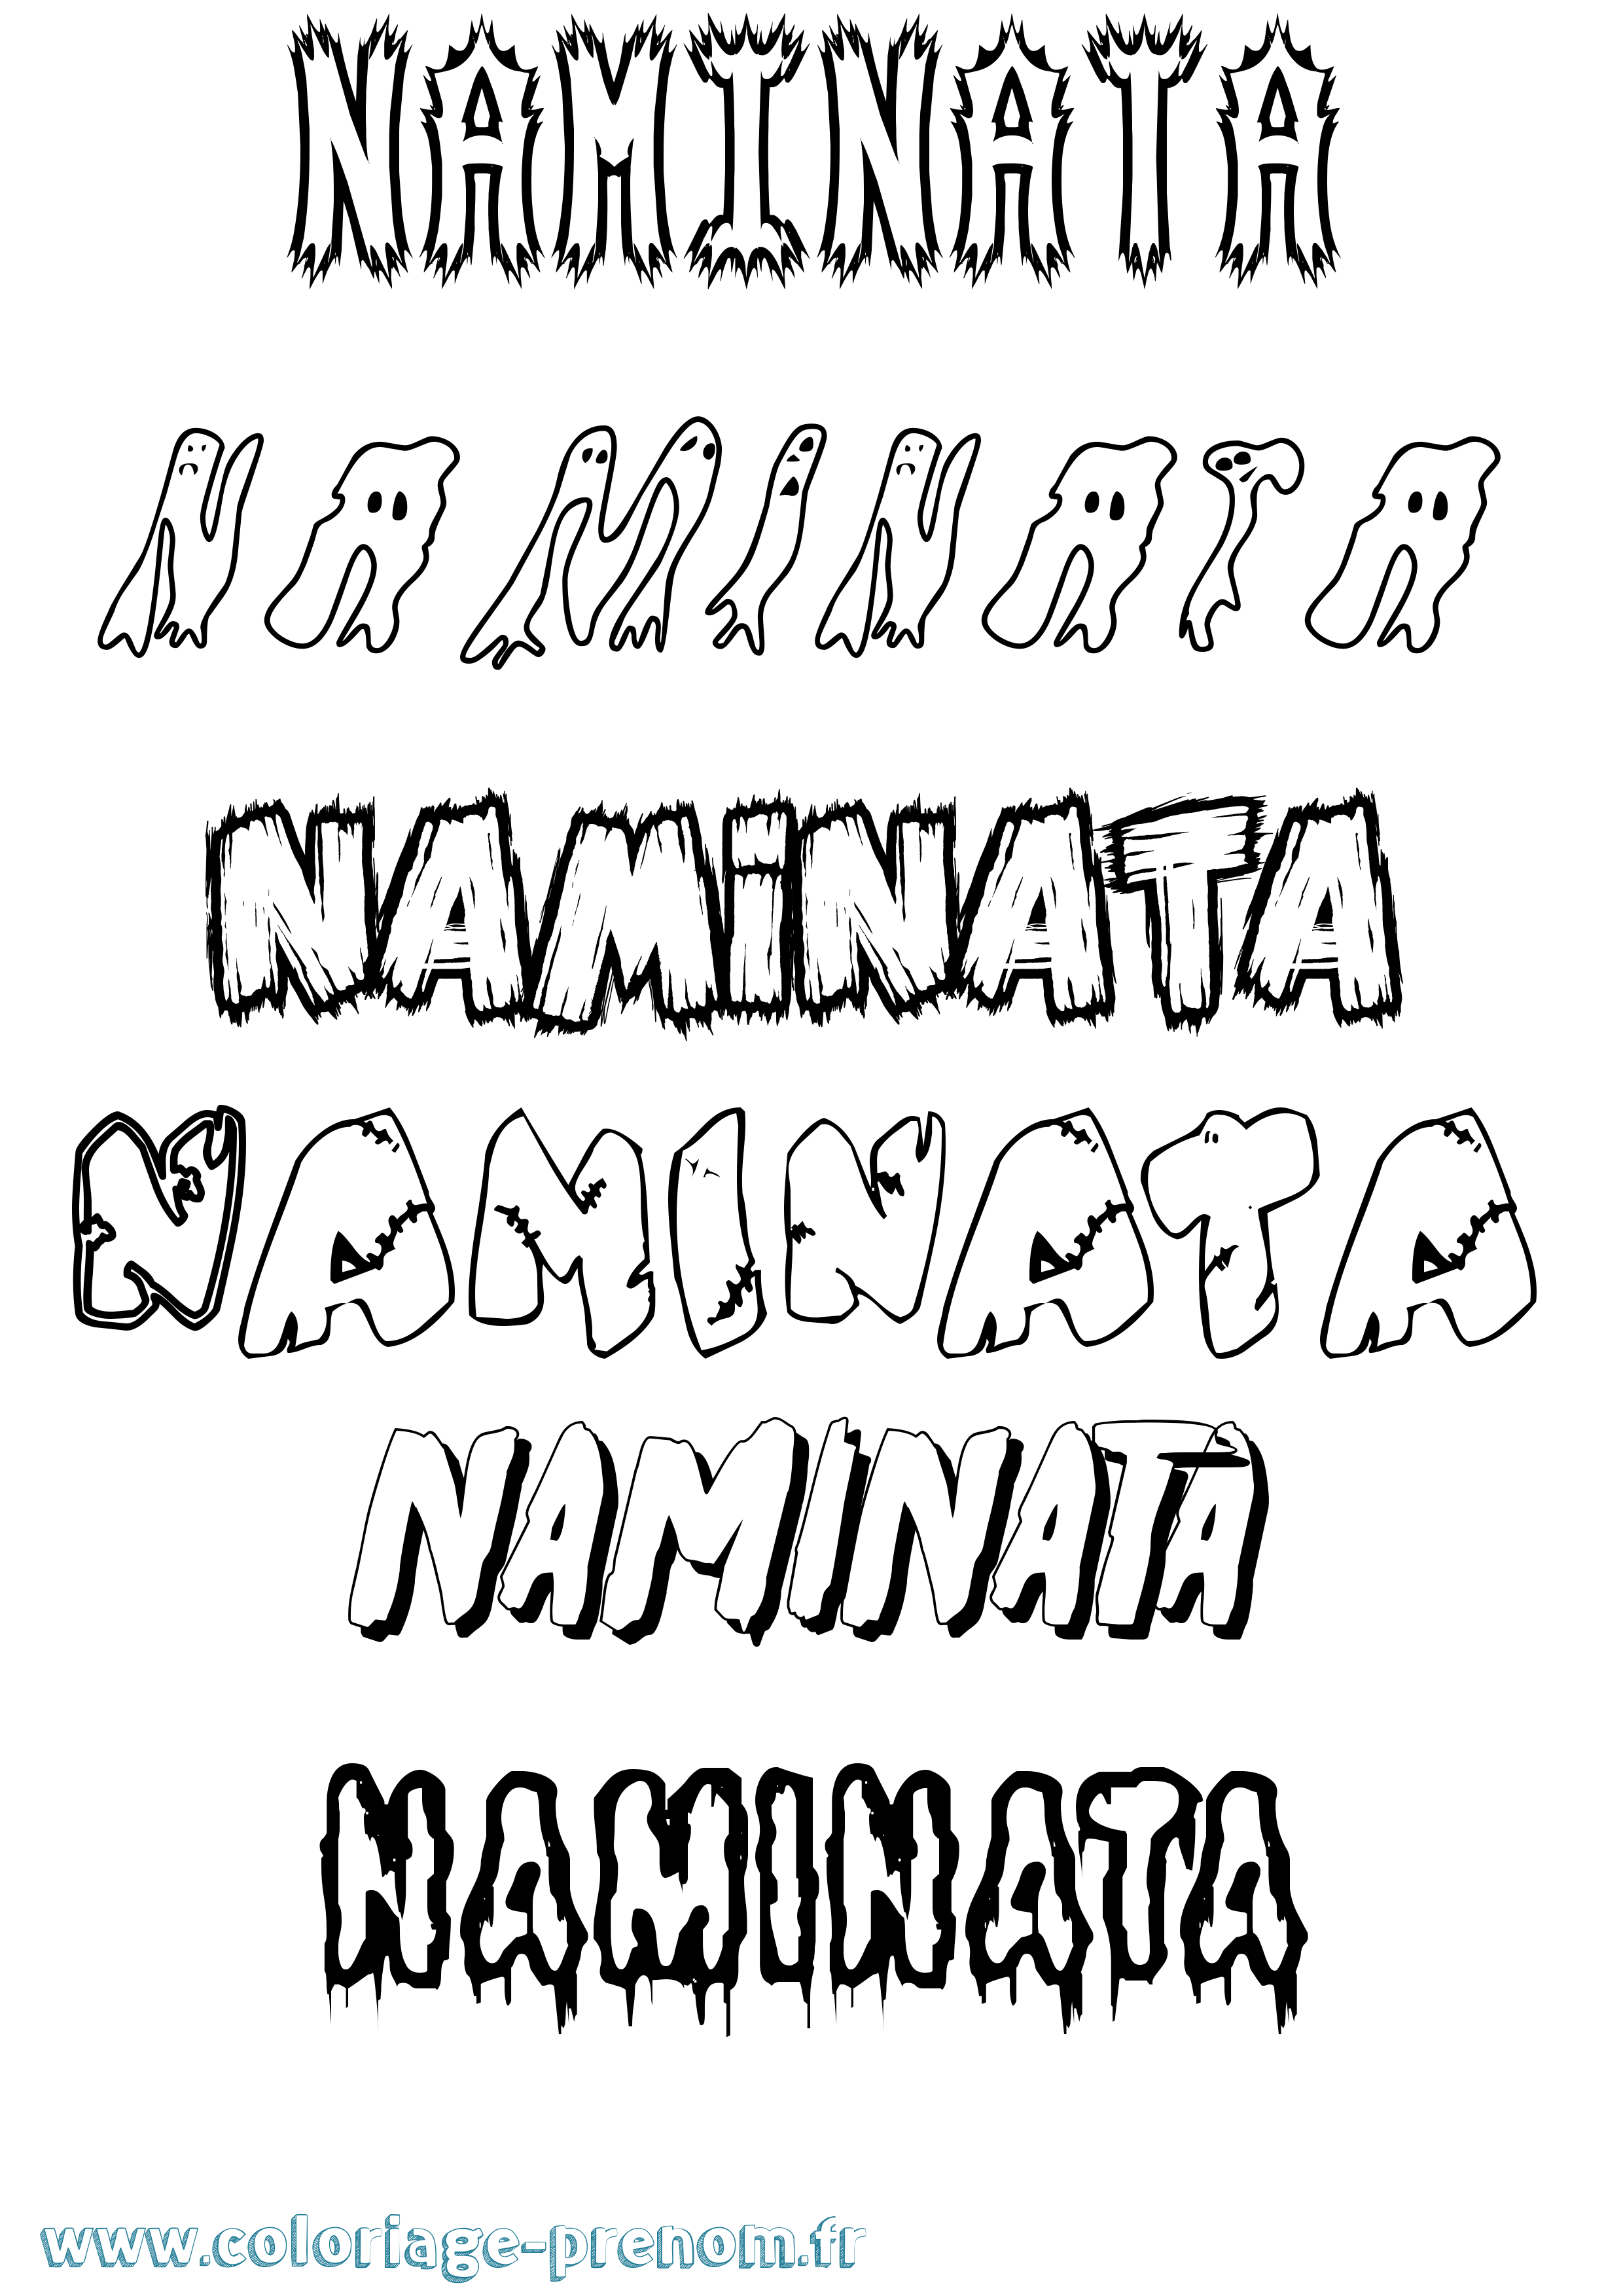 Coloriage prénom Naminata Frisson